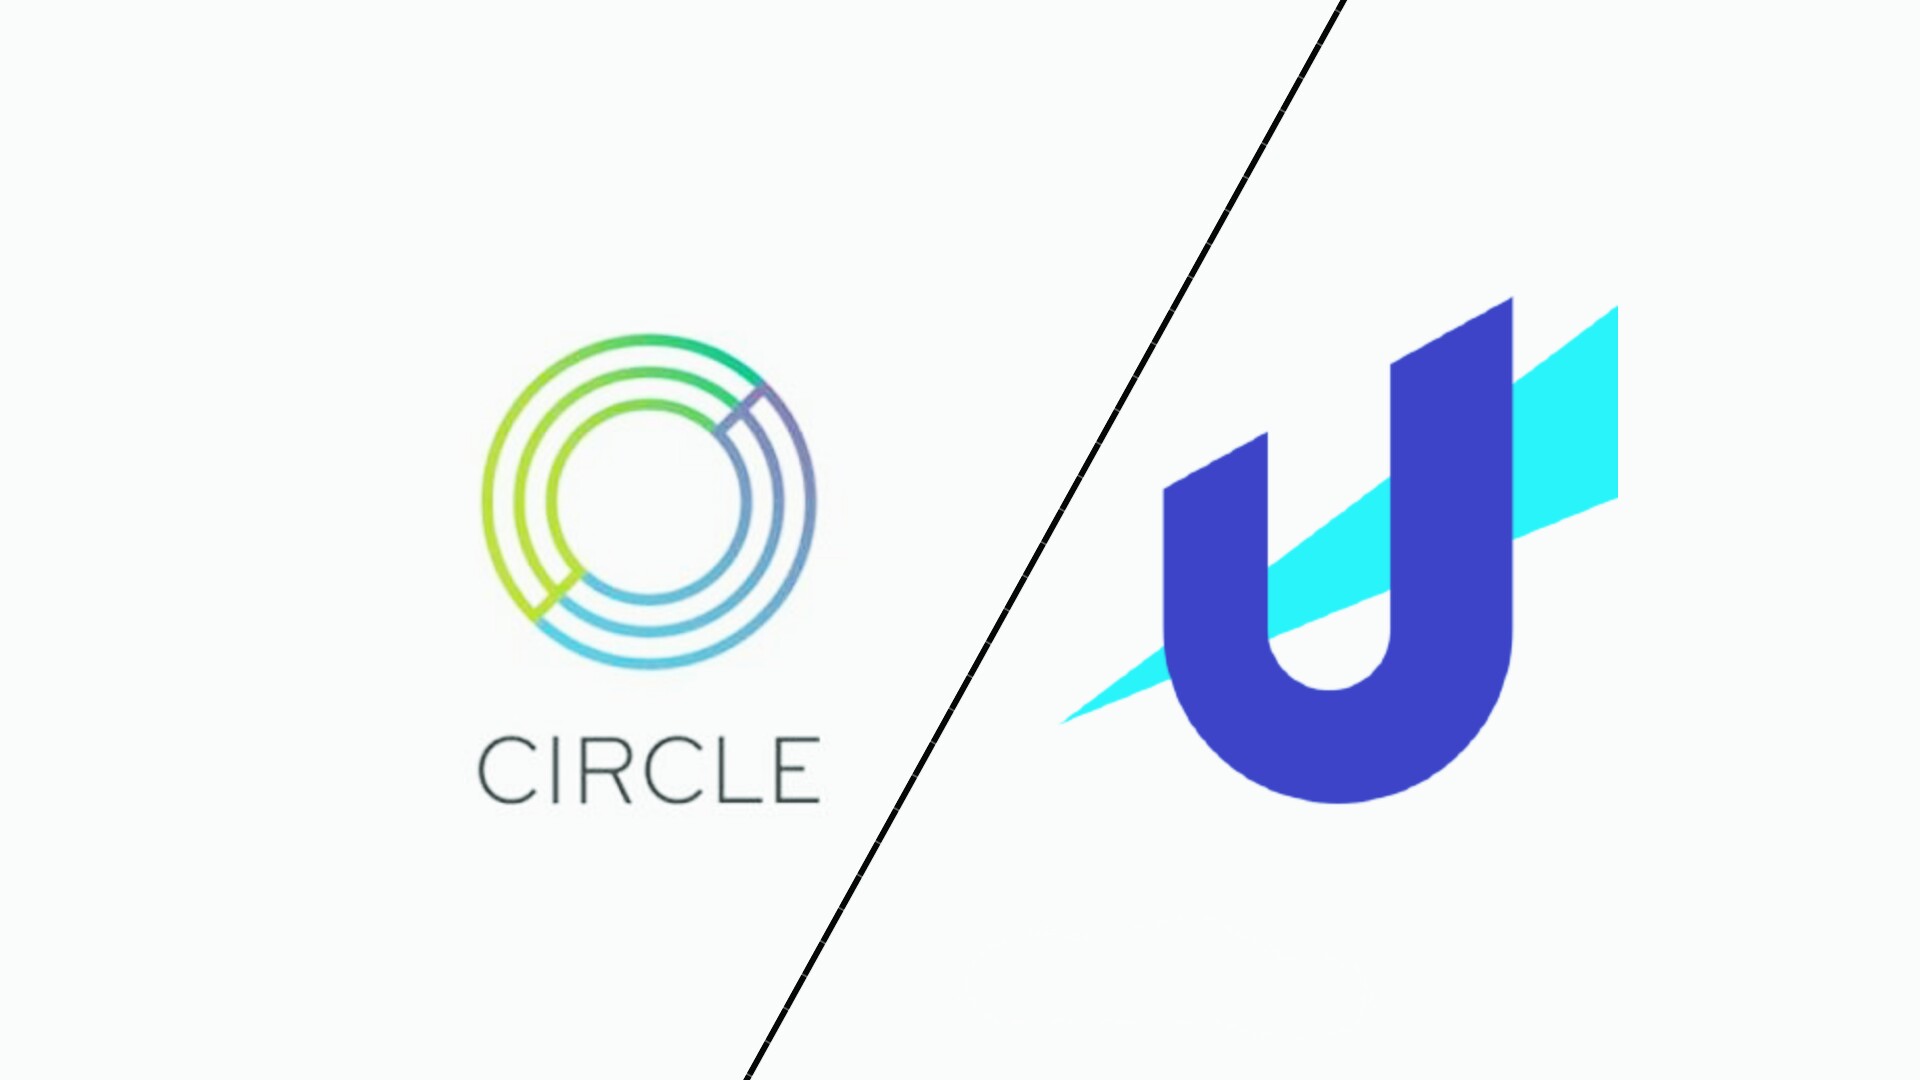 شرکت Circle در تراکنش های USDC به جای آدرس های طولانی از نام کاربری استفاده خواهد کرد